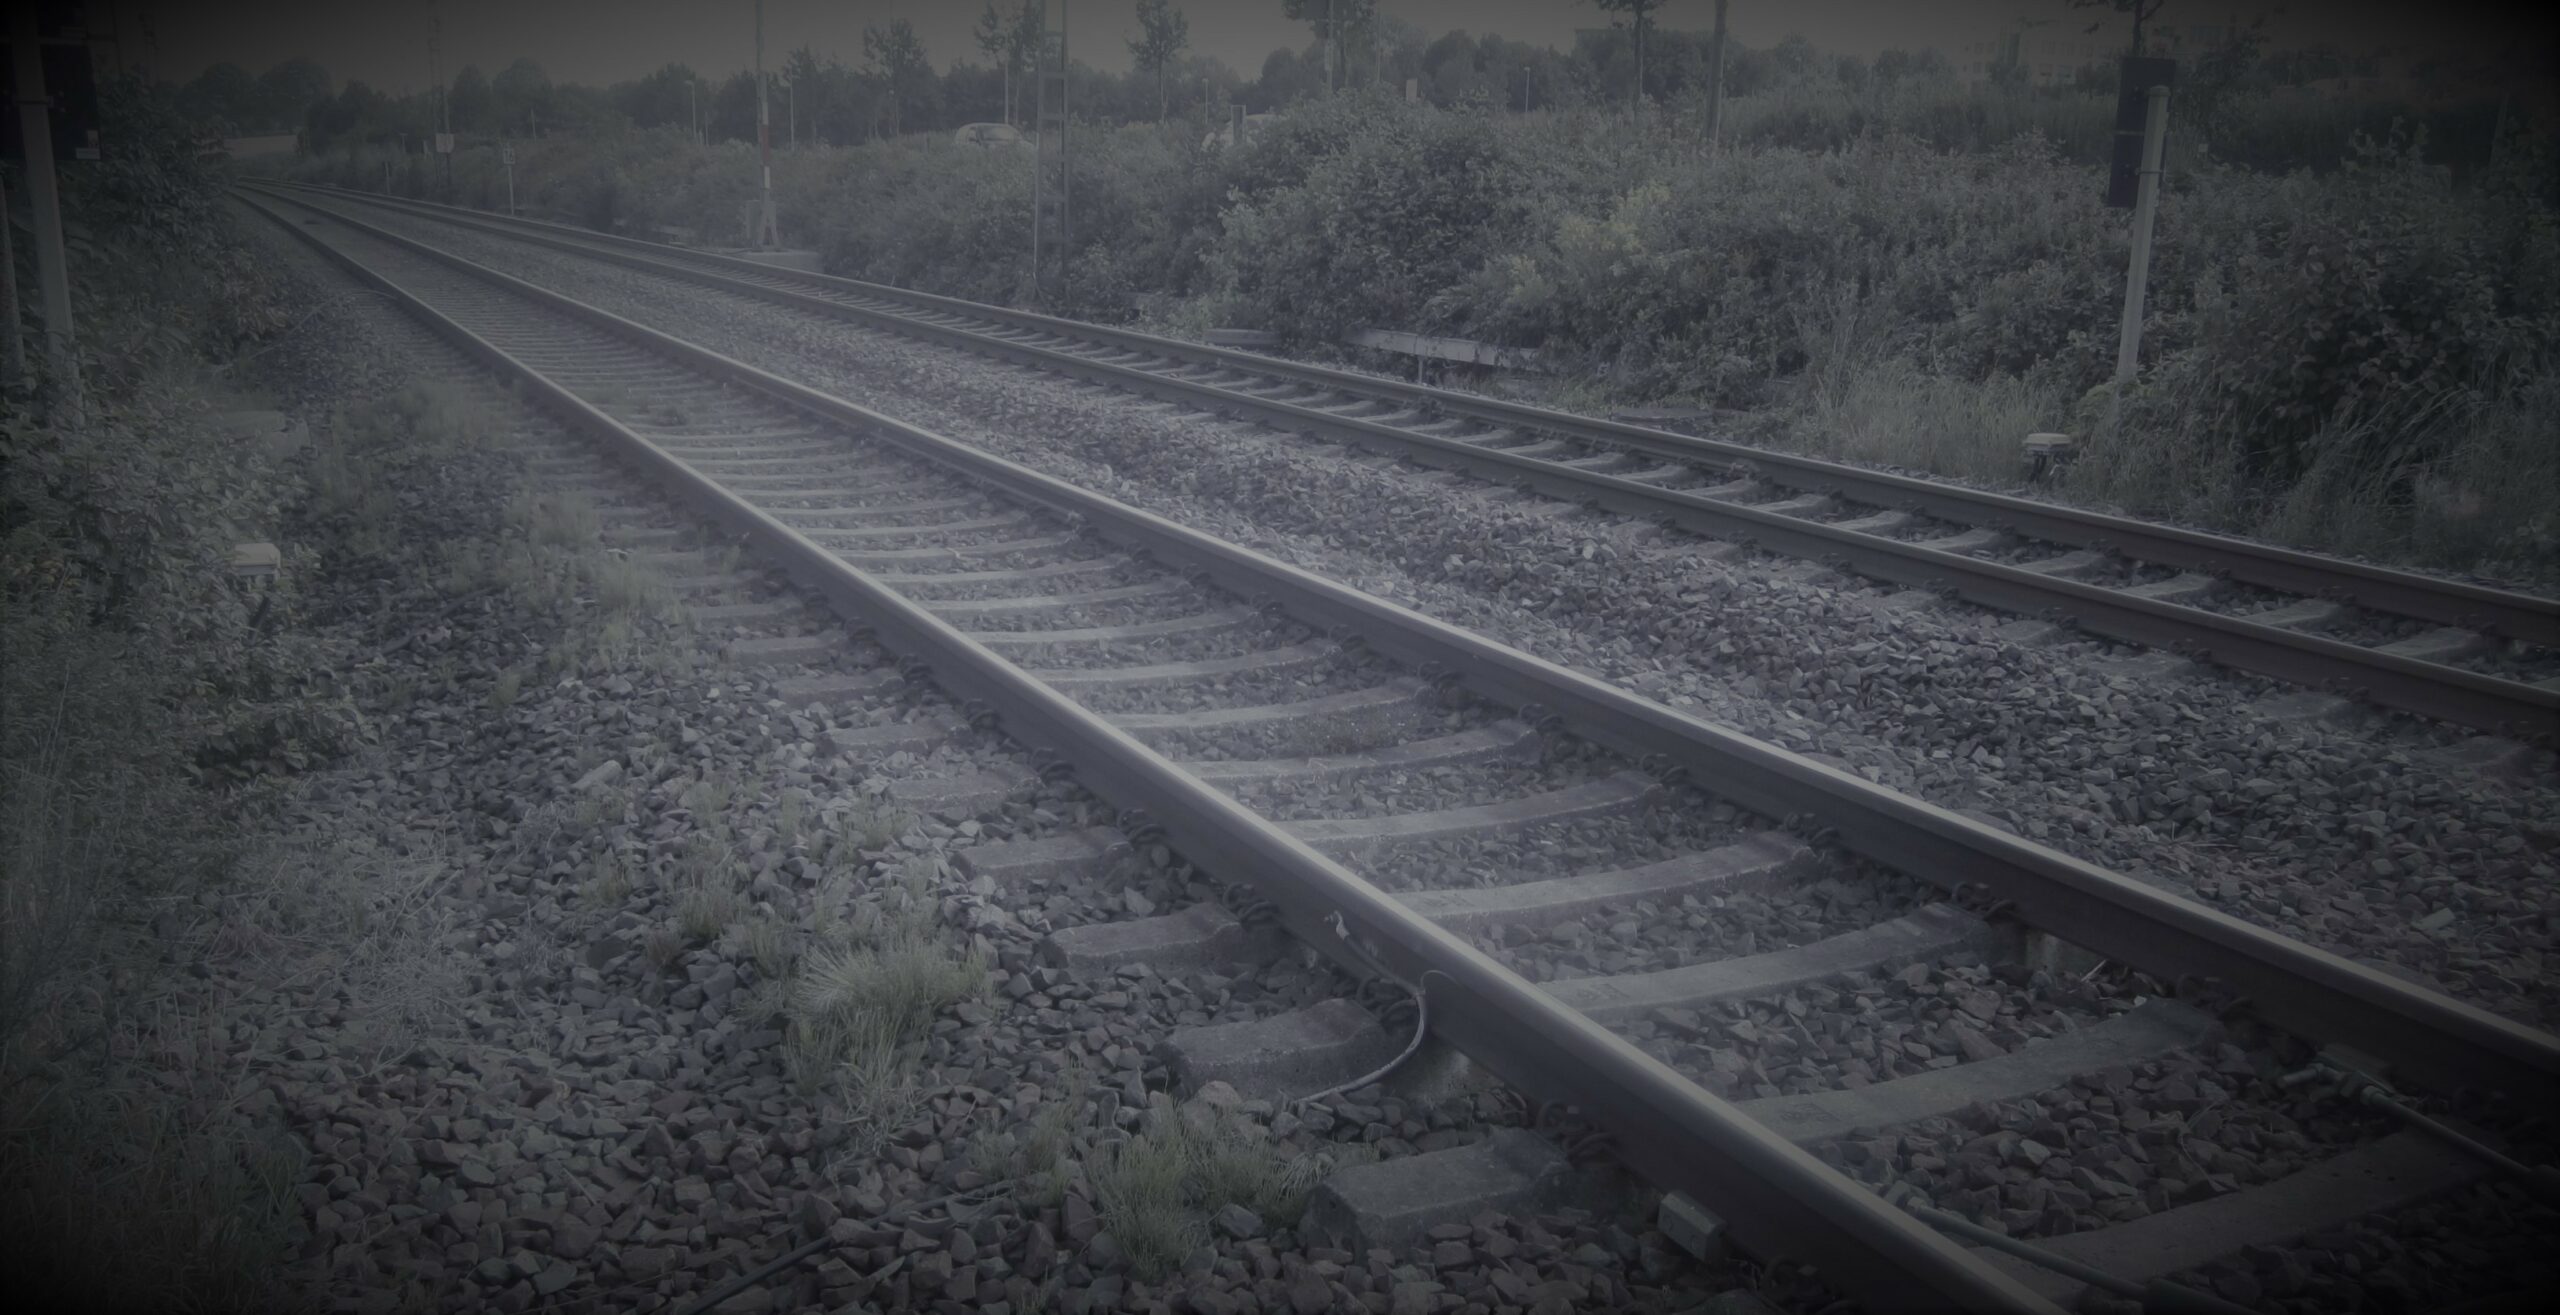 Tödliches Unglück im MK – Güterzug erfasst Mann im Bahnhof Altena